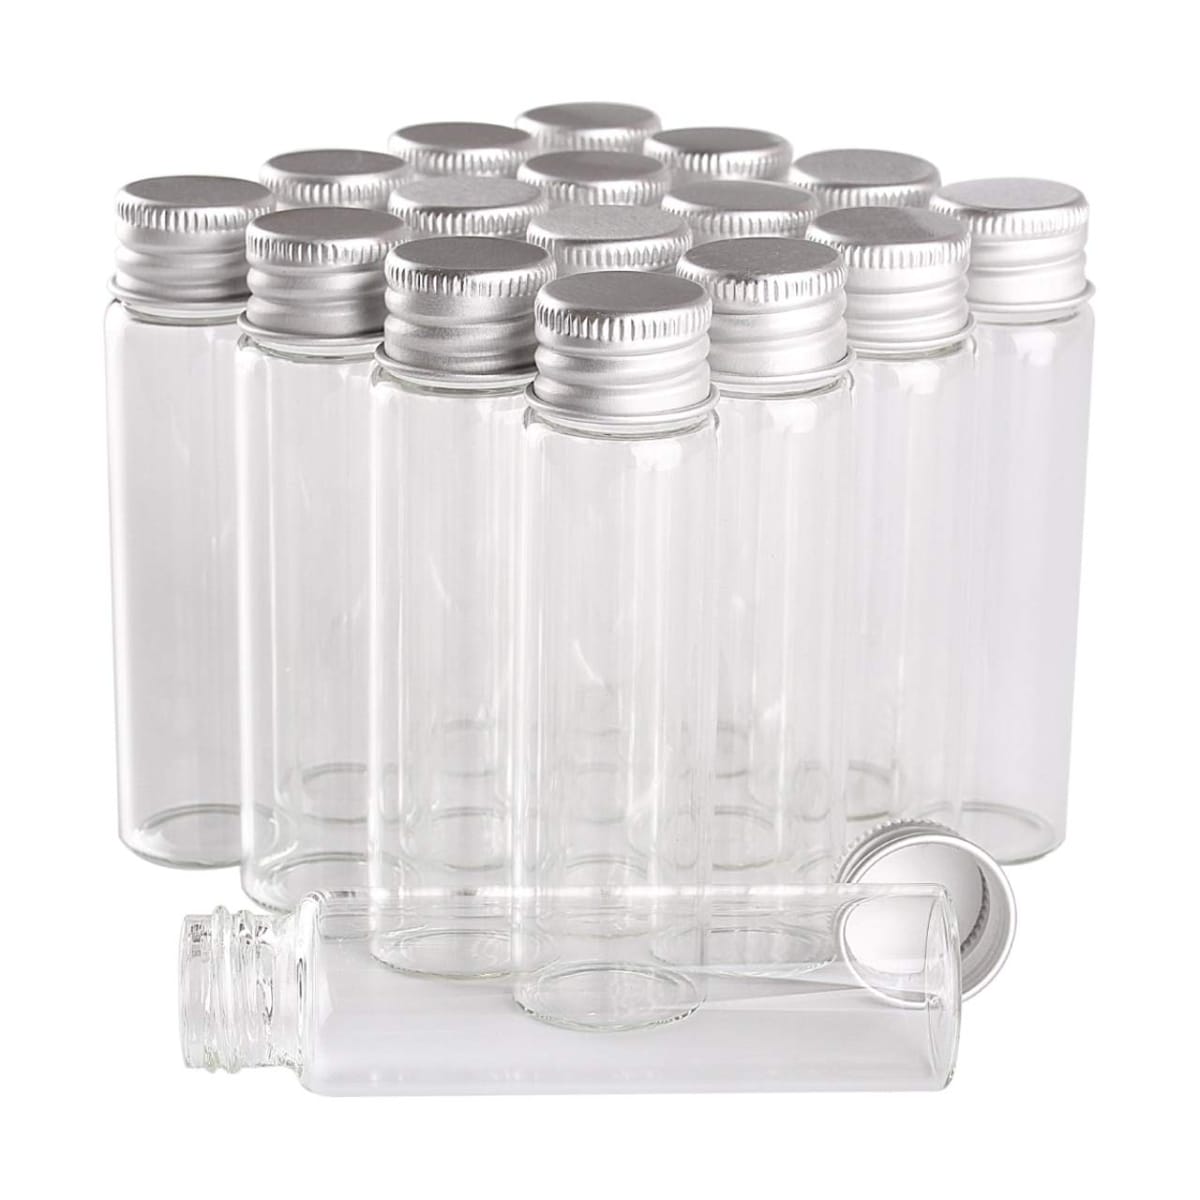 SKY 瓶 ミニボトル ガラス瓶 小分けボトル 容器 ガラス ビン 小瓶 小物 調味料ボトル ガラスボトル 20本セット 20ml